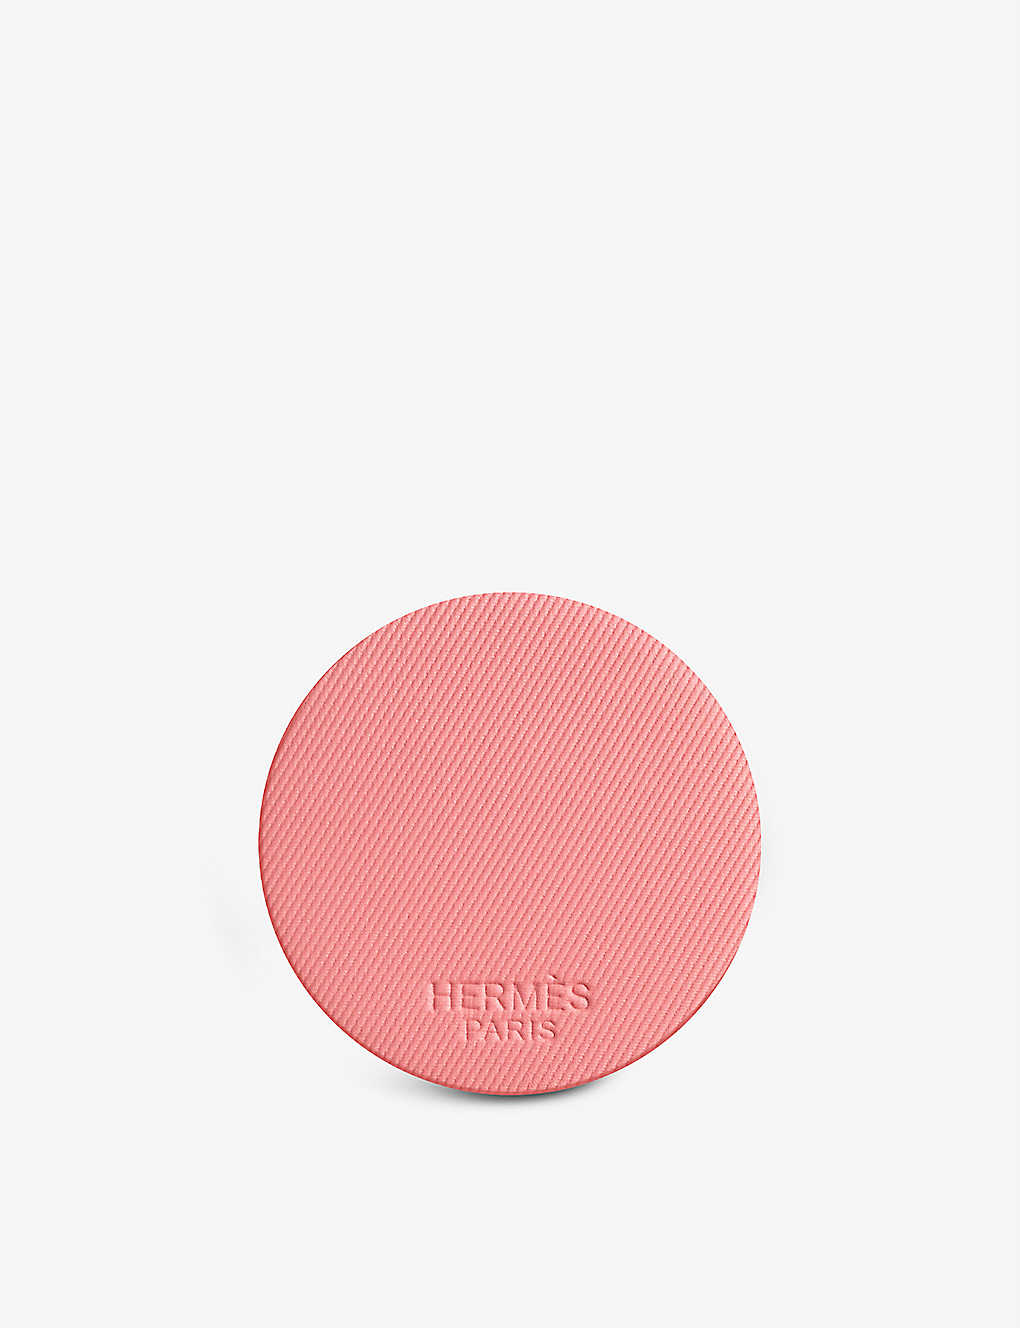 Hermes 37 Rose Poivre Rose Hermès Silky Blush Refill 6g